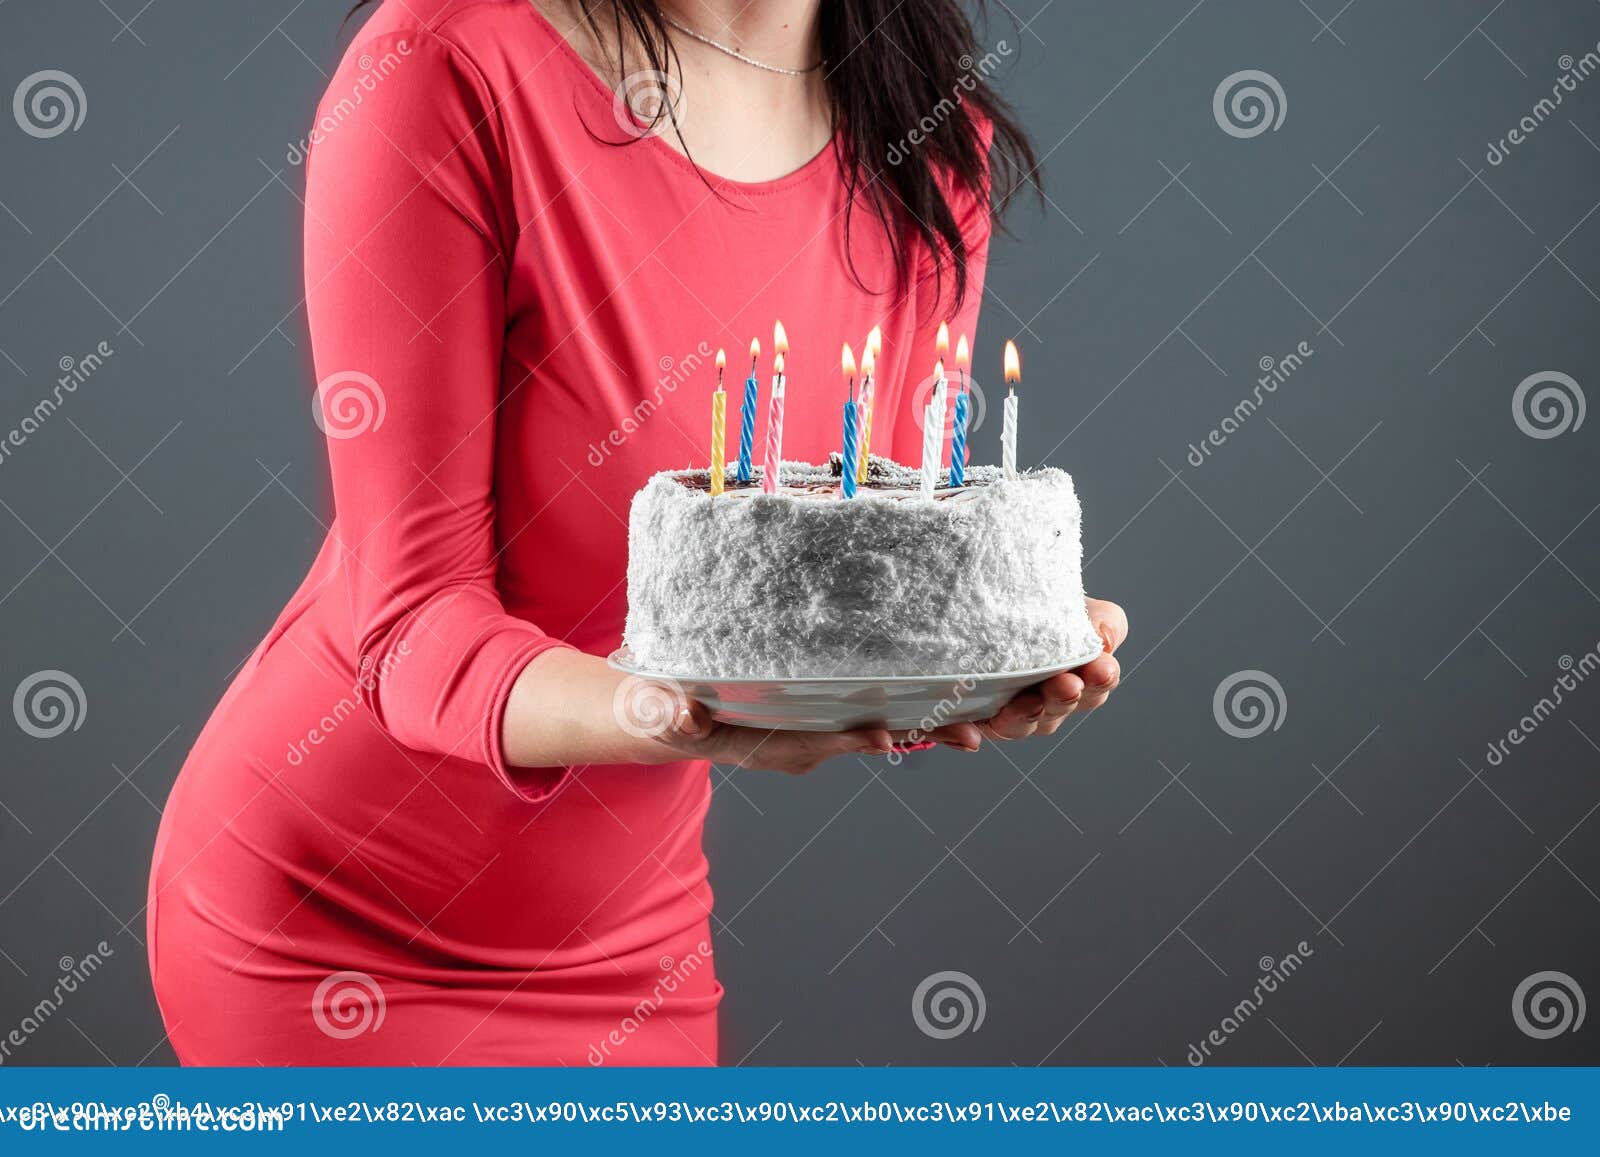 Happy birthday cake ladies